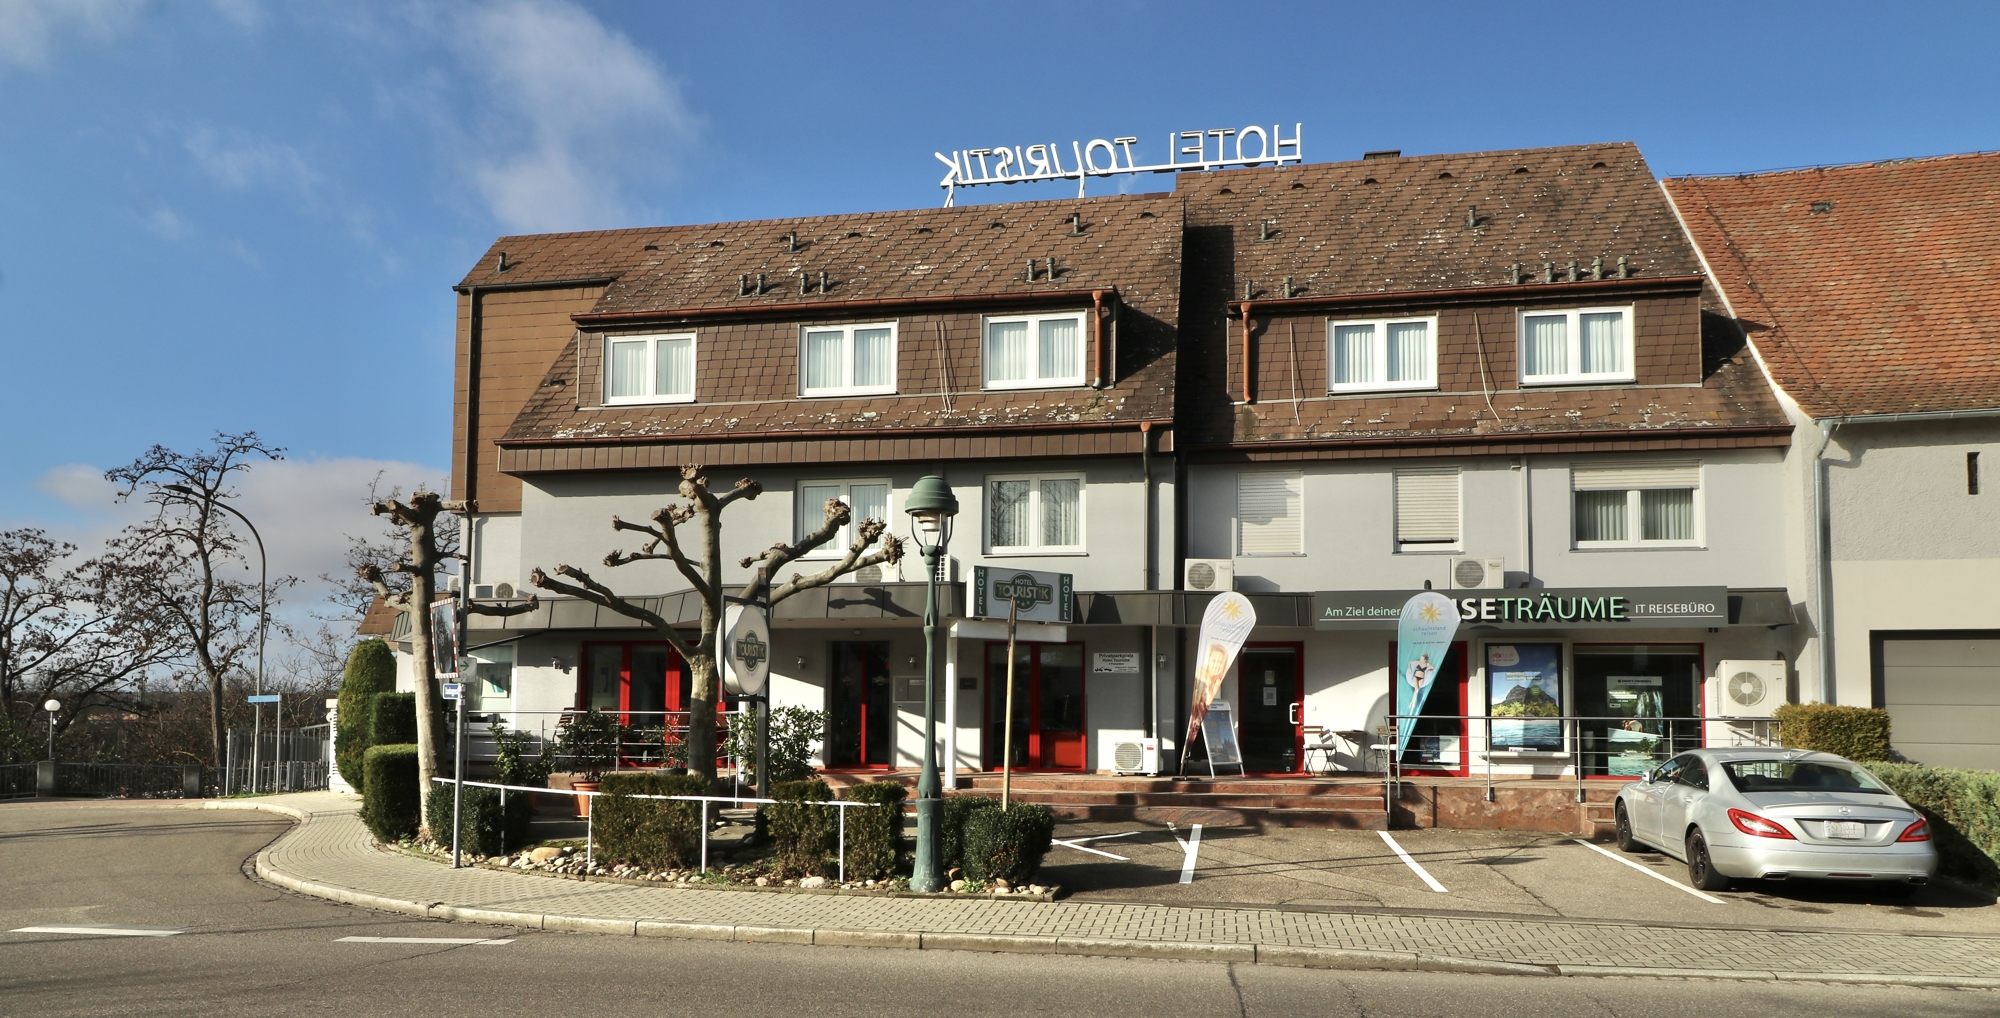 Modernes Hotelgebäude mit Restaurant, Reisebüro und großer Privatwohnung in Top-Lage von Neuenburg